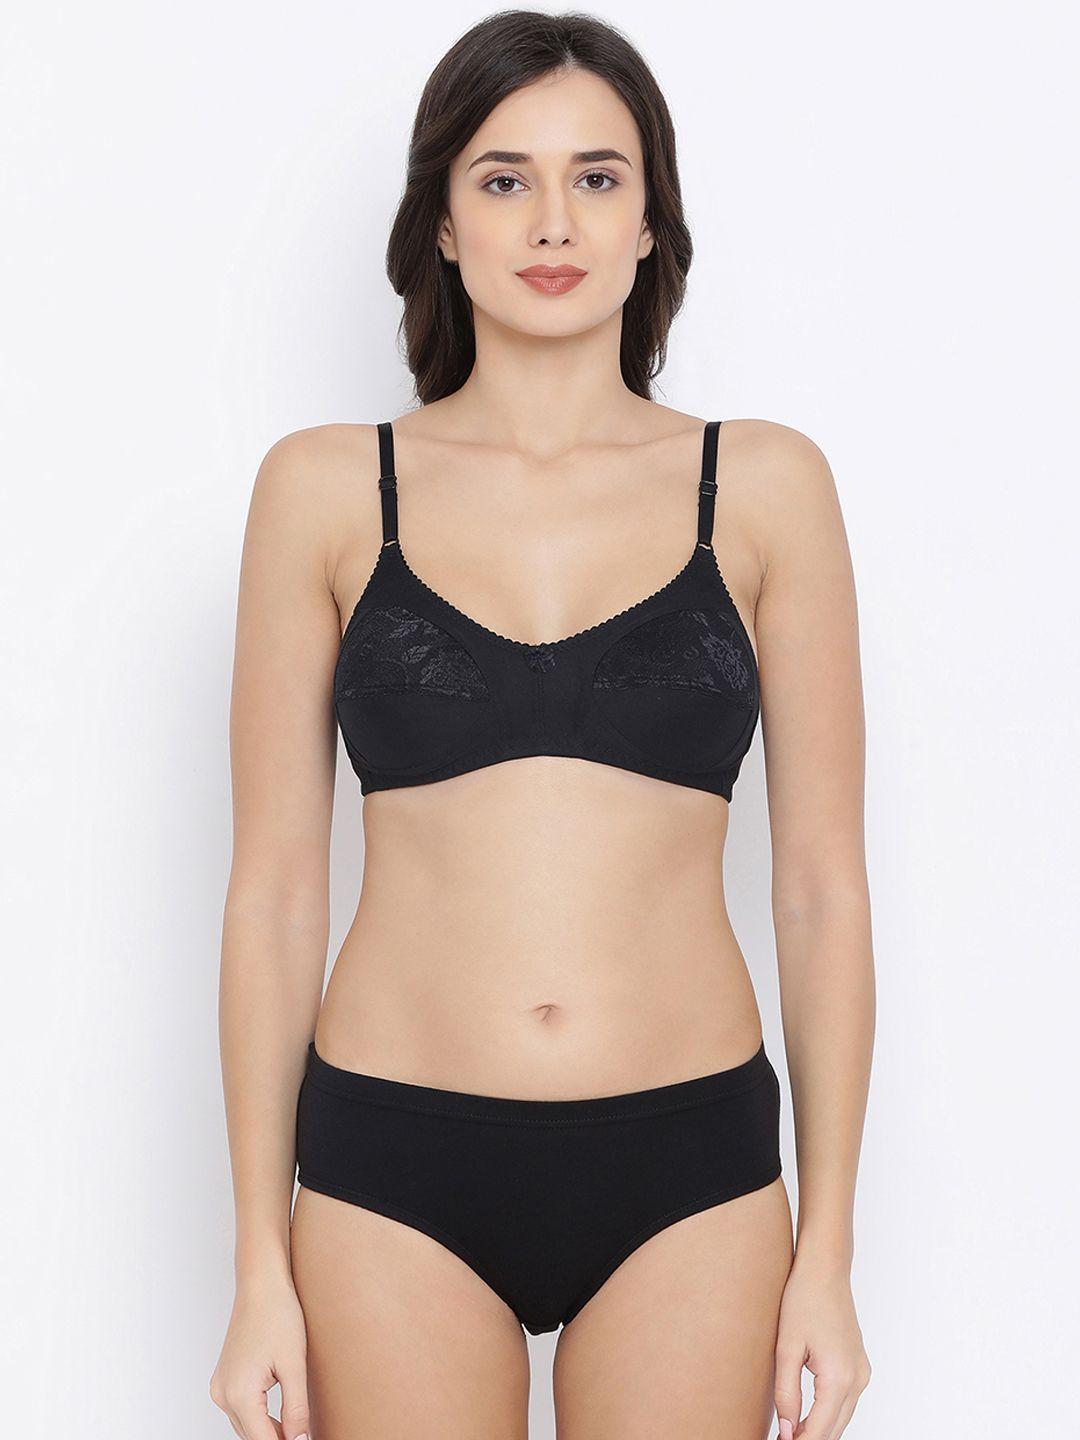 clovia women black solid lingerie set combbp68732b